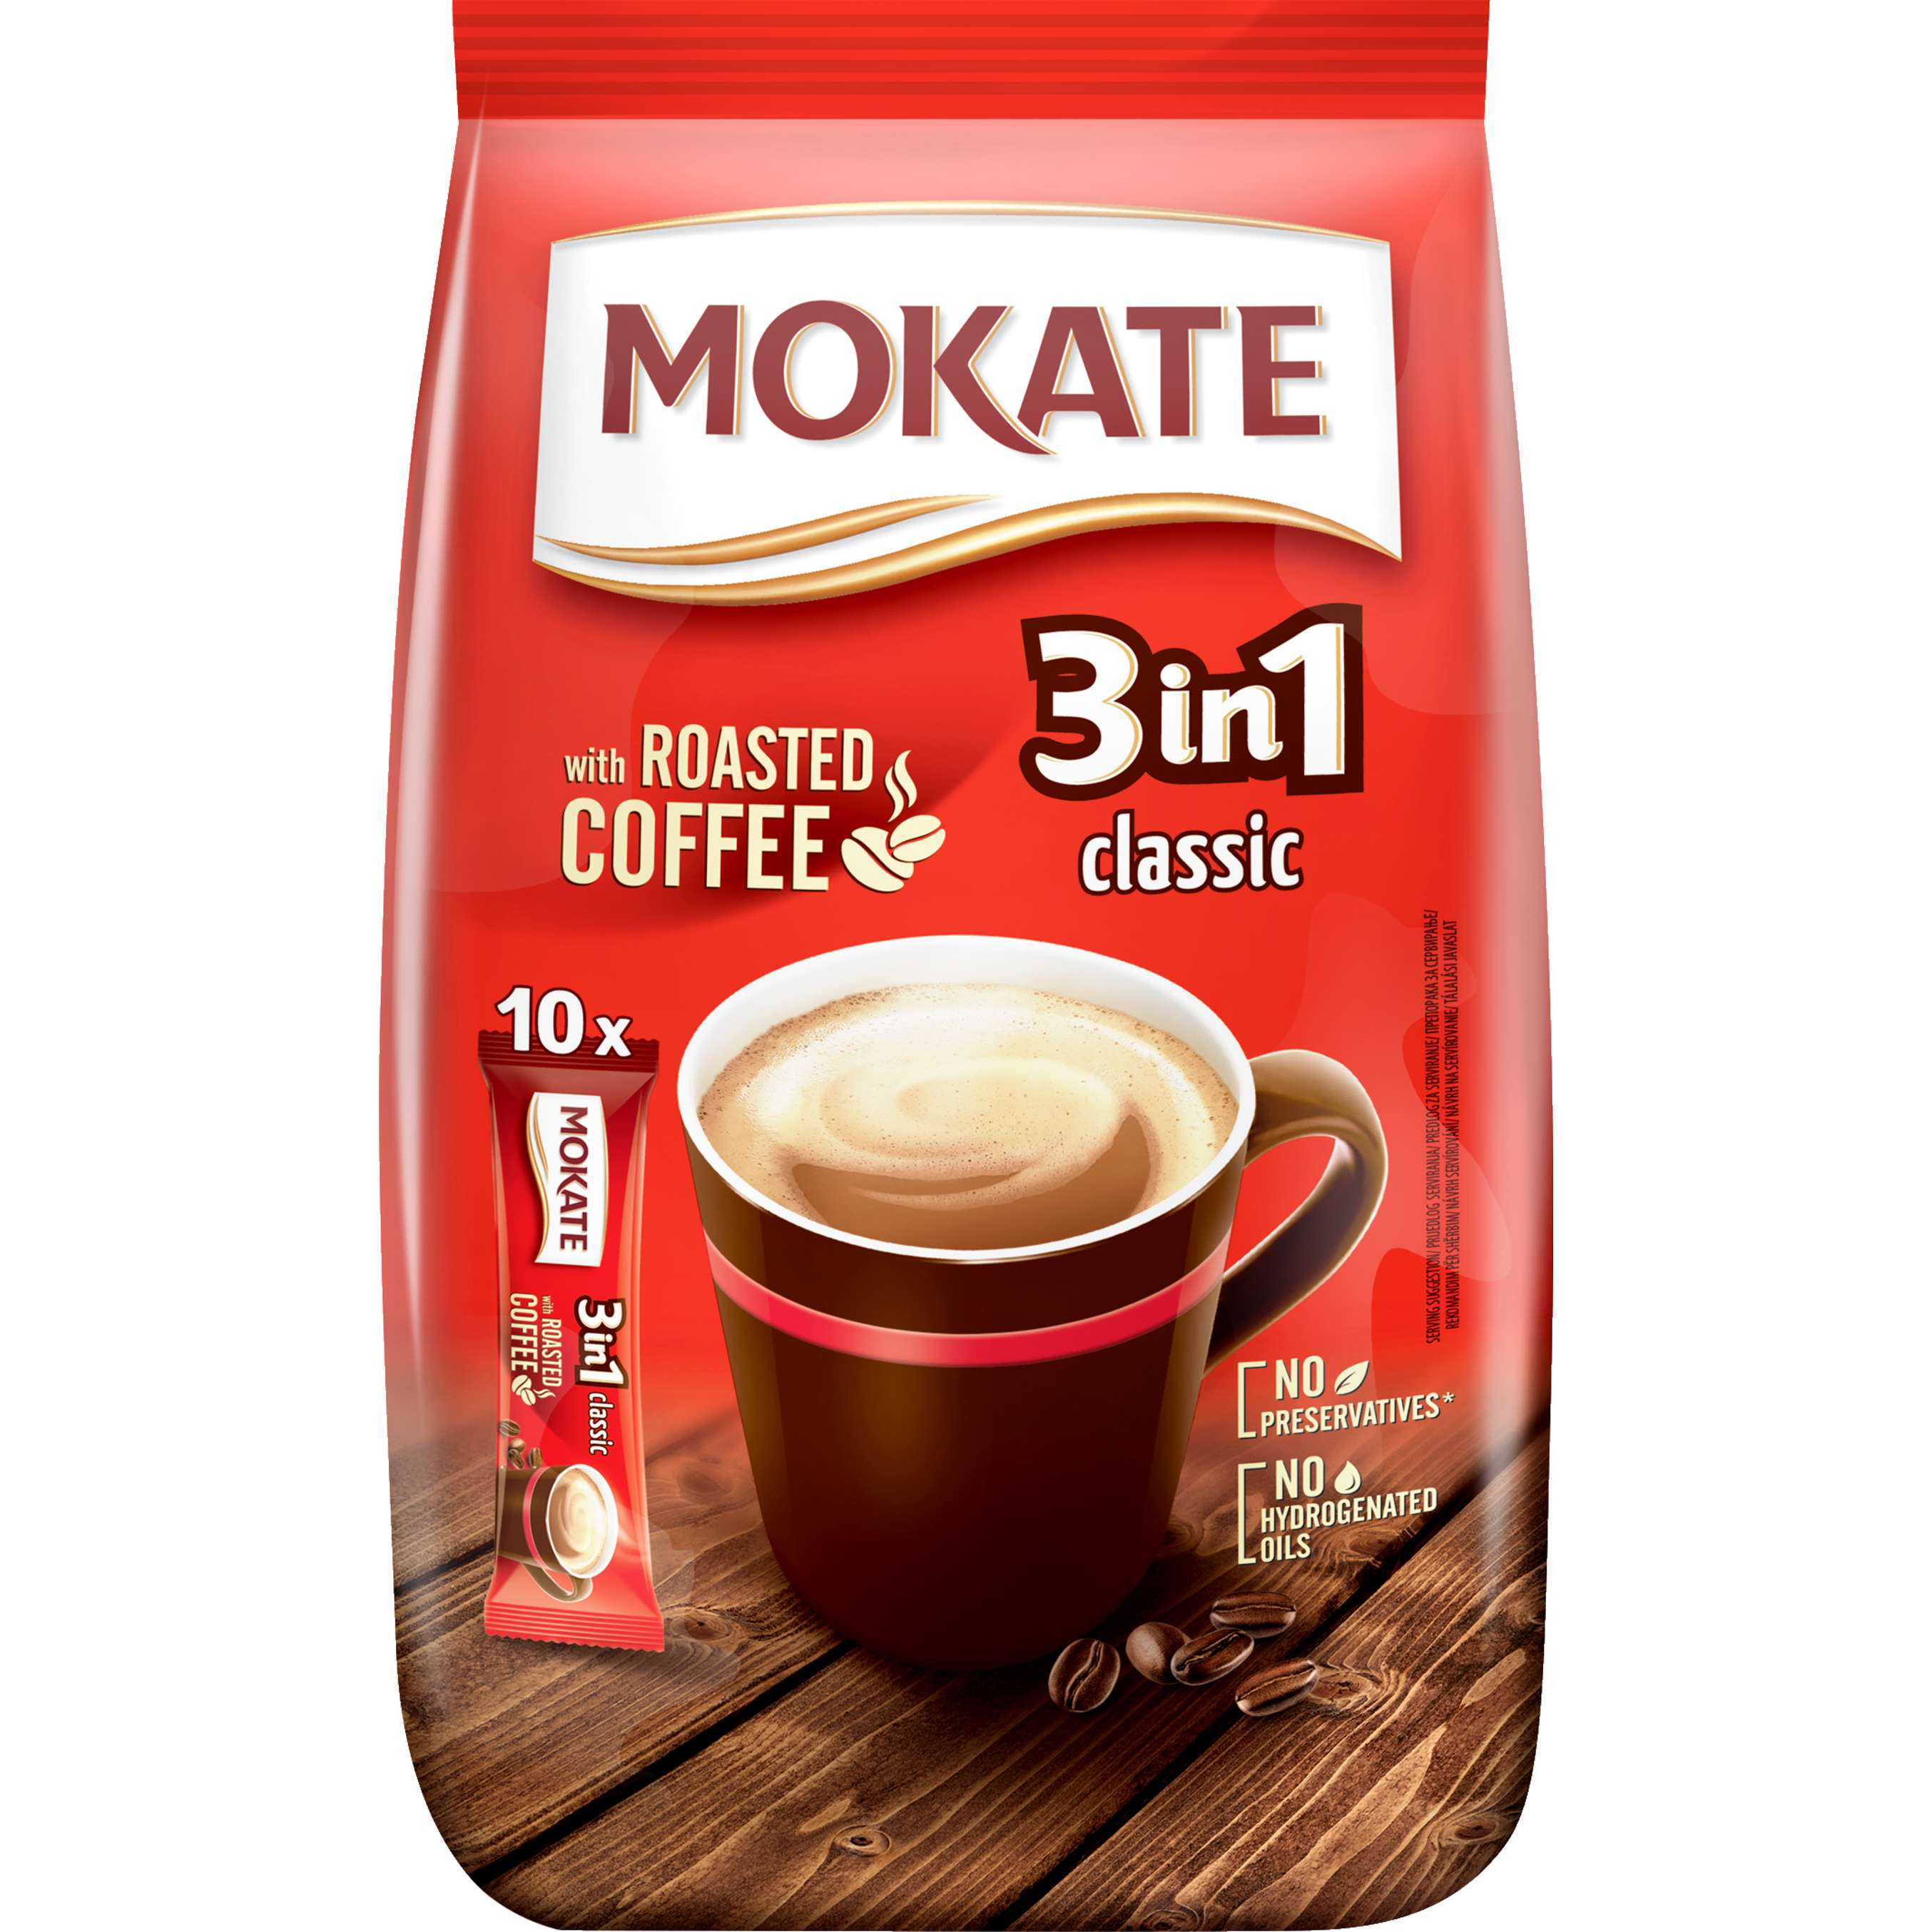 Zobrazit nabídku Mokate Instantní káva